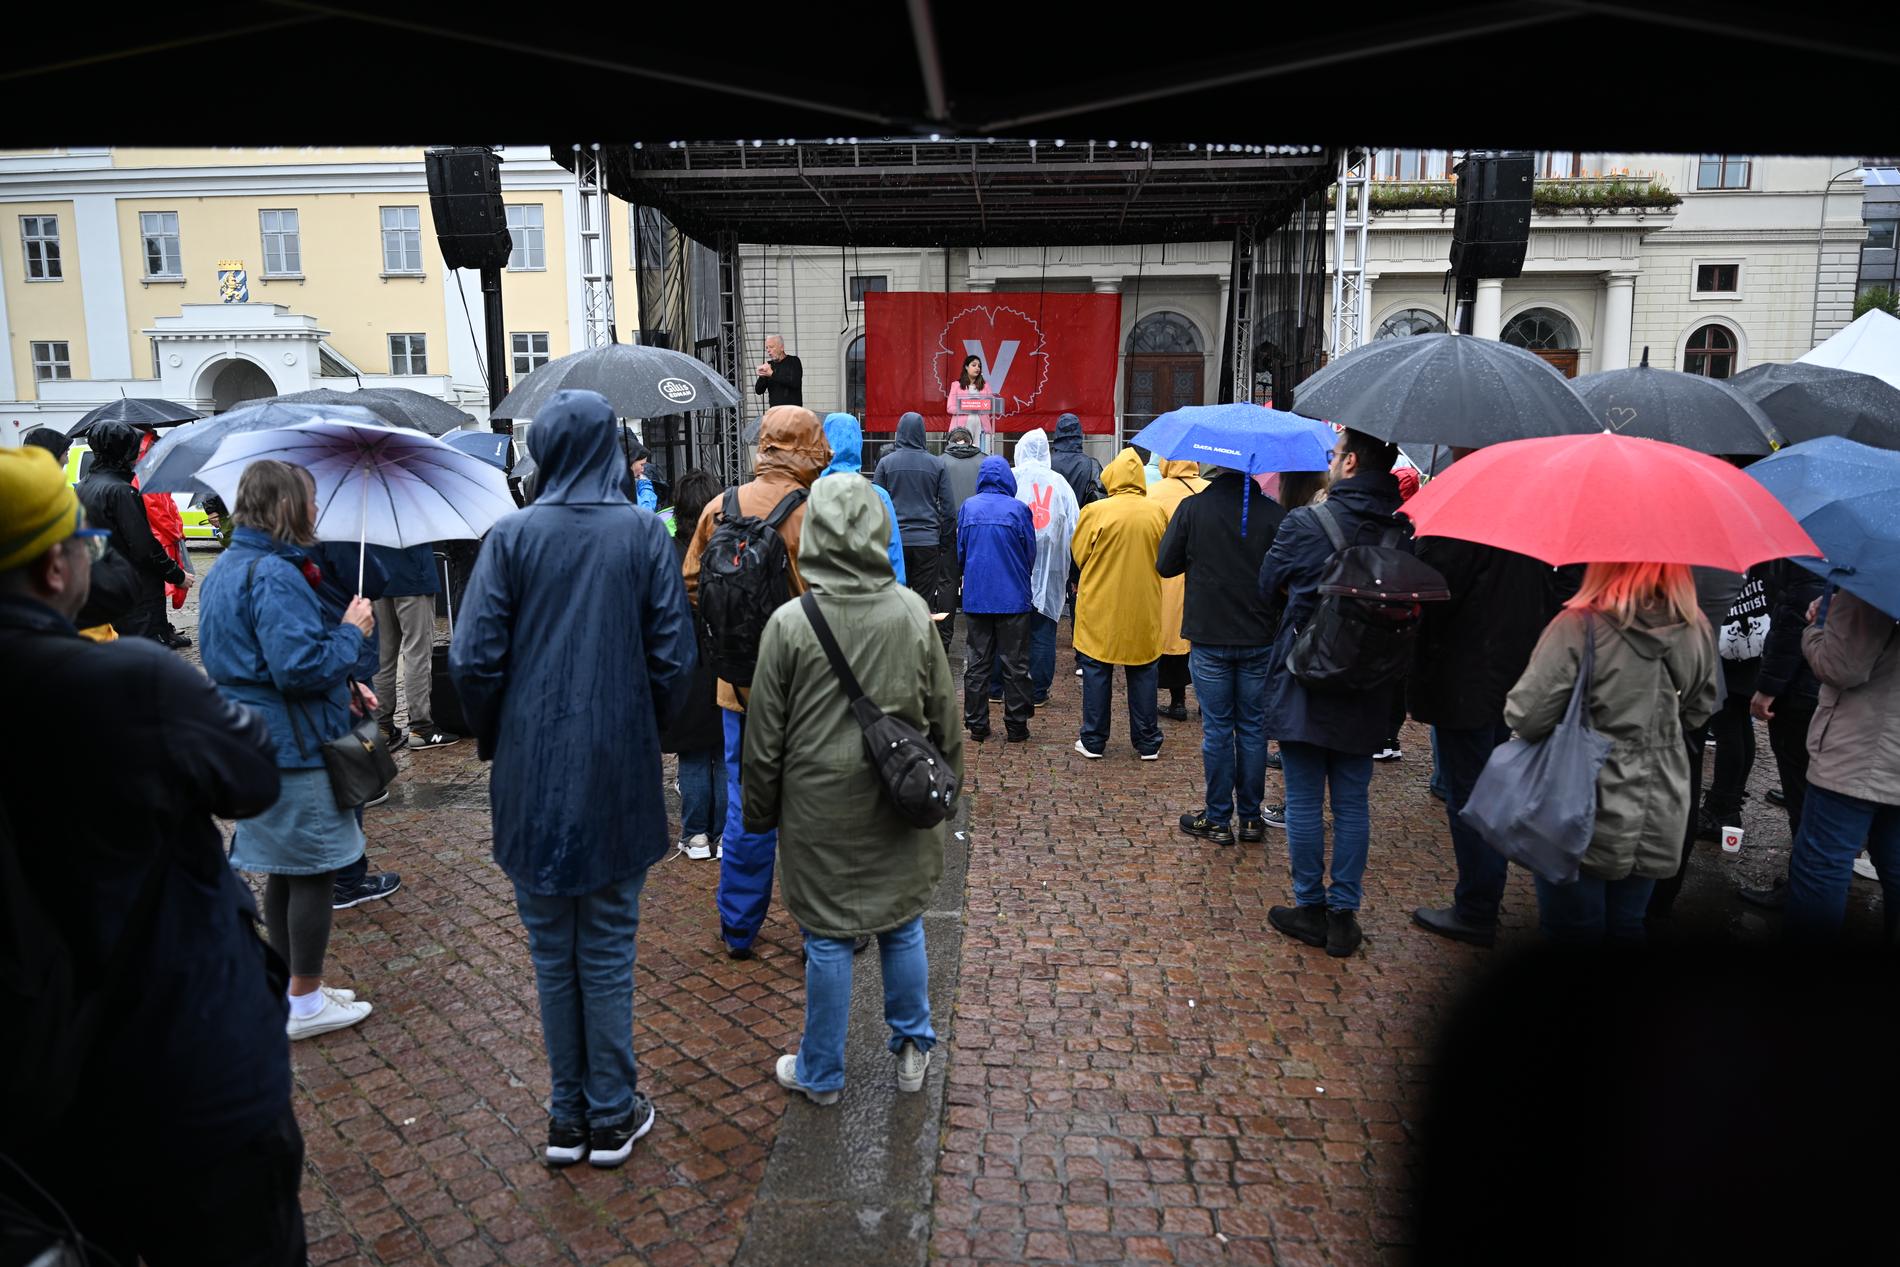 Regnet föll över Göteborg när Nooshi Dadgostar talade på lördagen.